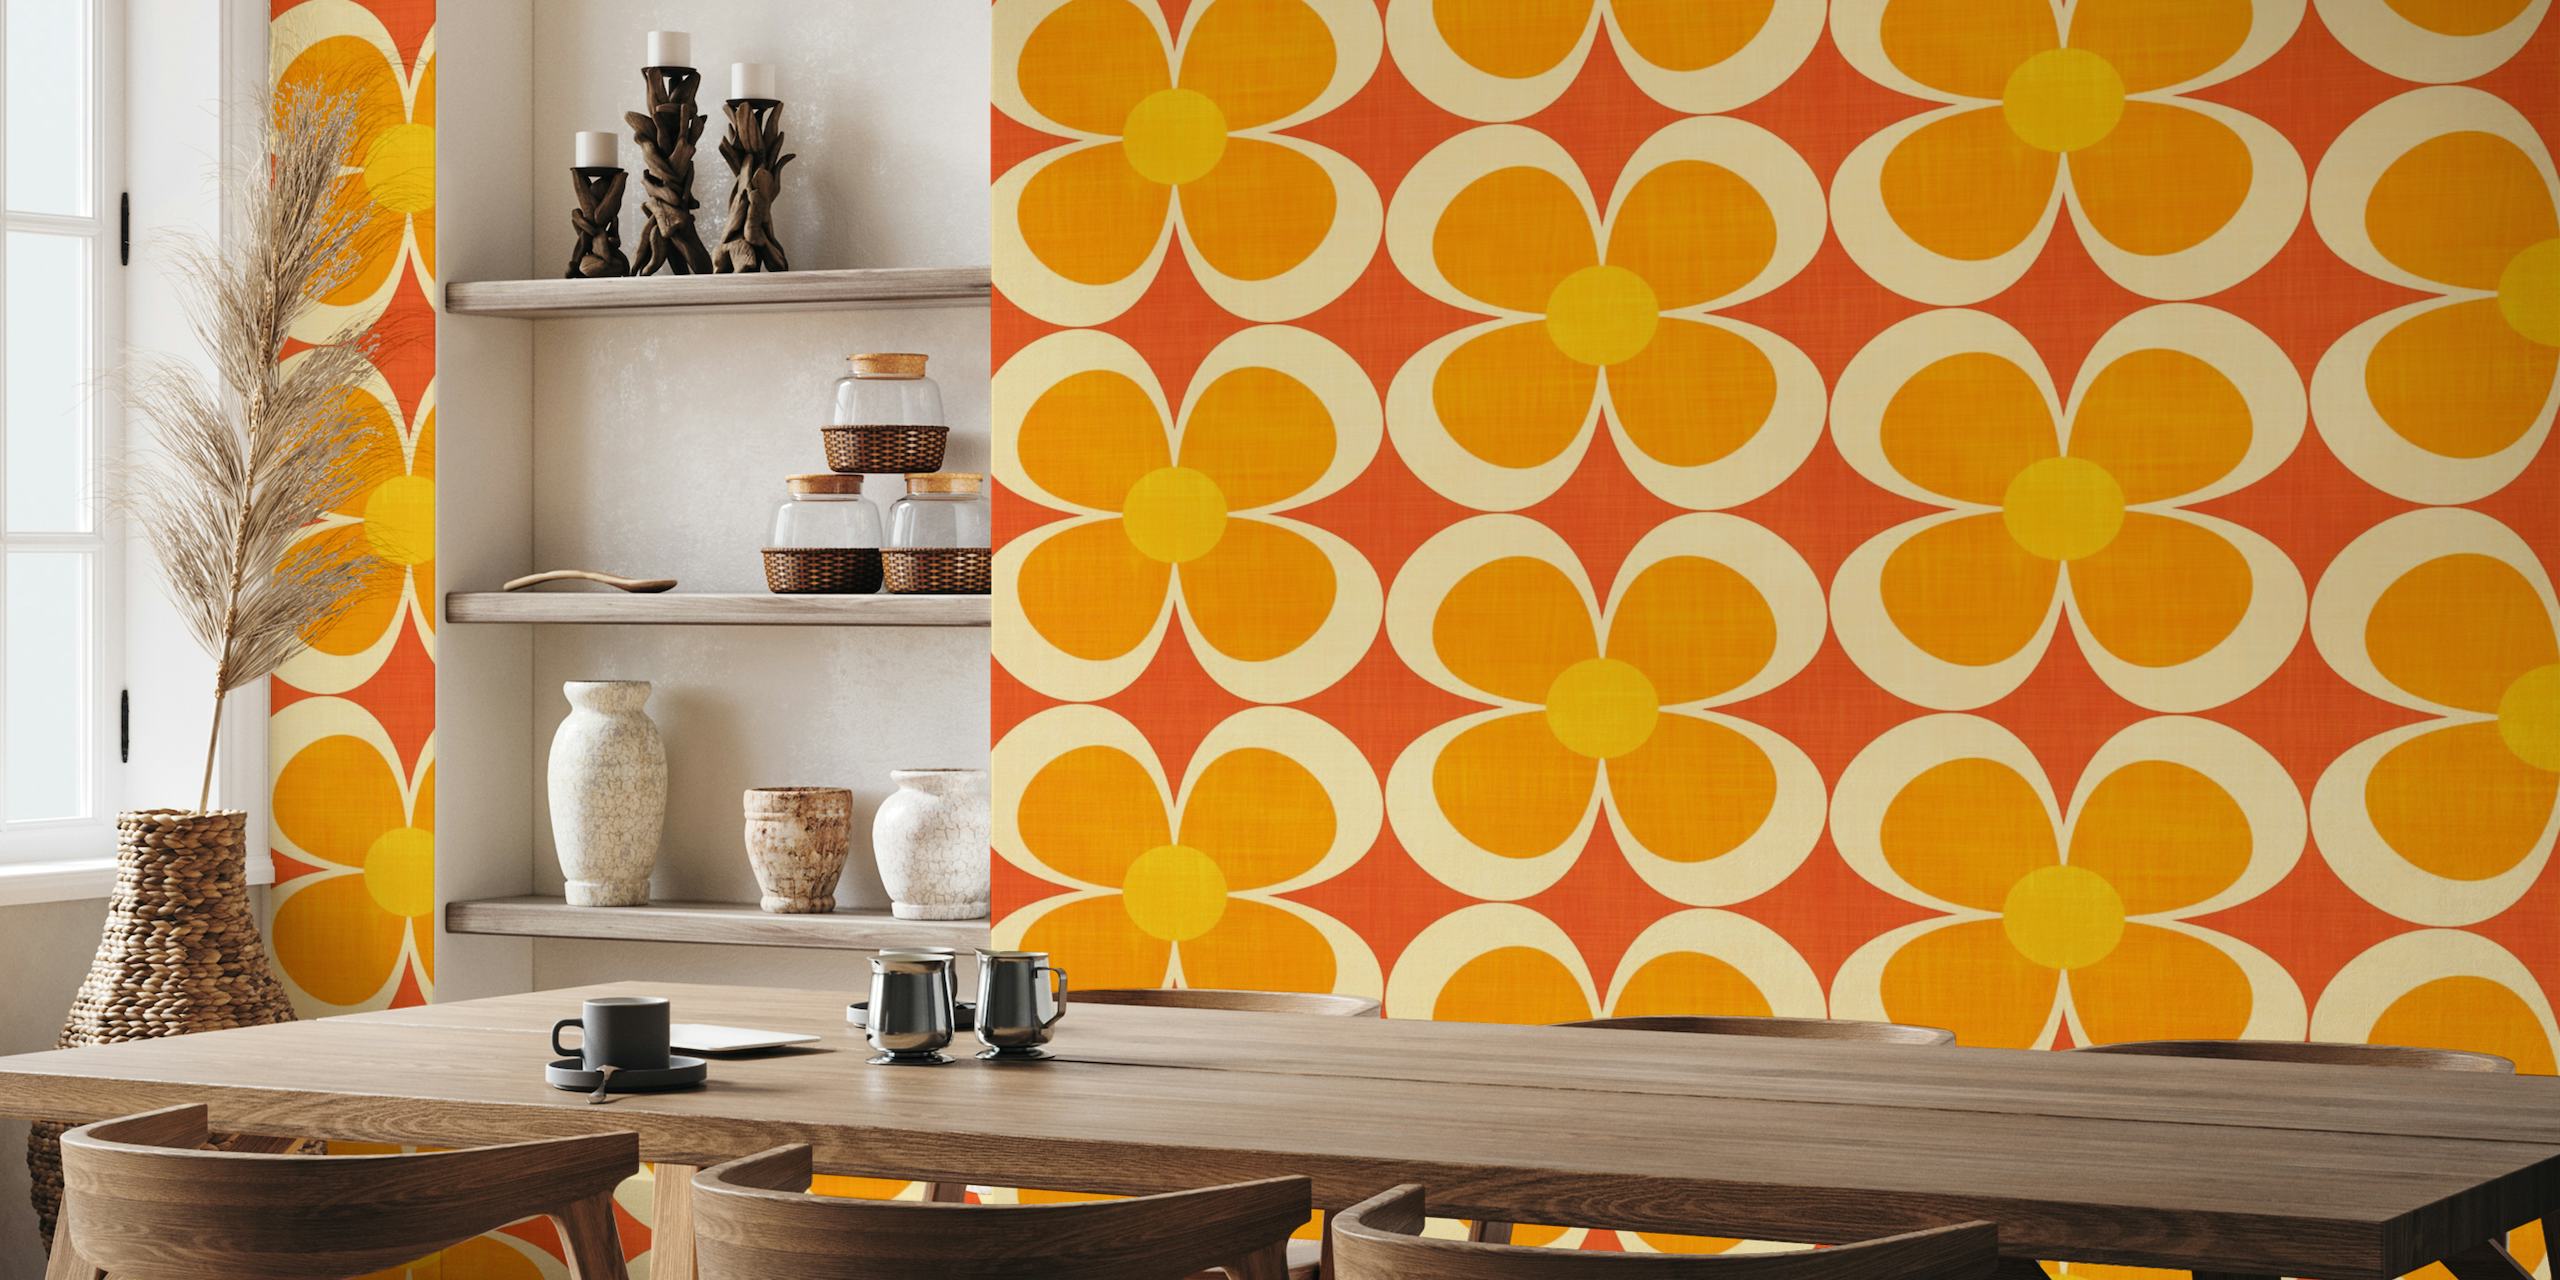 Mural de parede Groovy Geometric Floral de inspiração retro em laranja, amarelo e vermelho